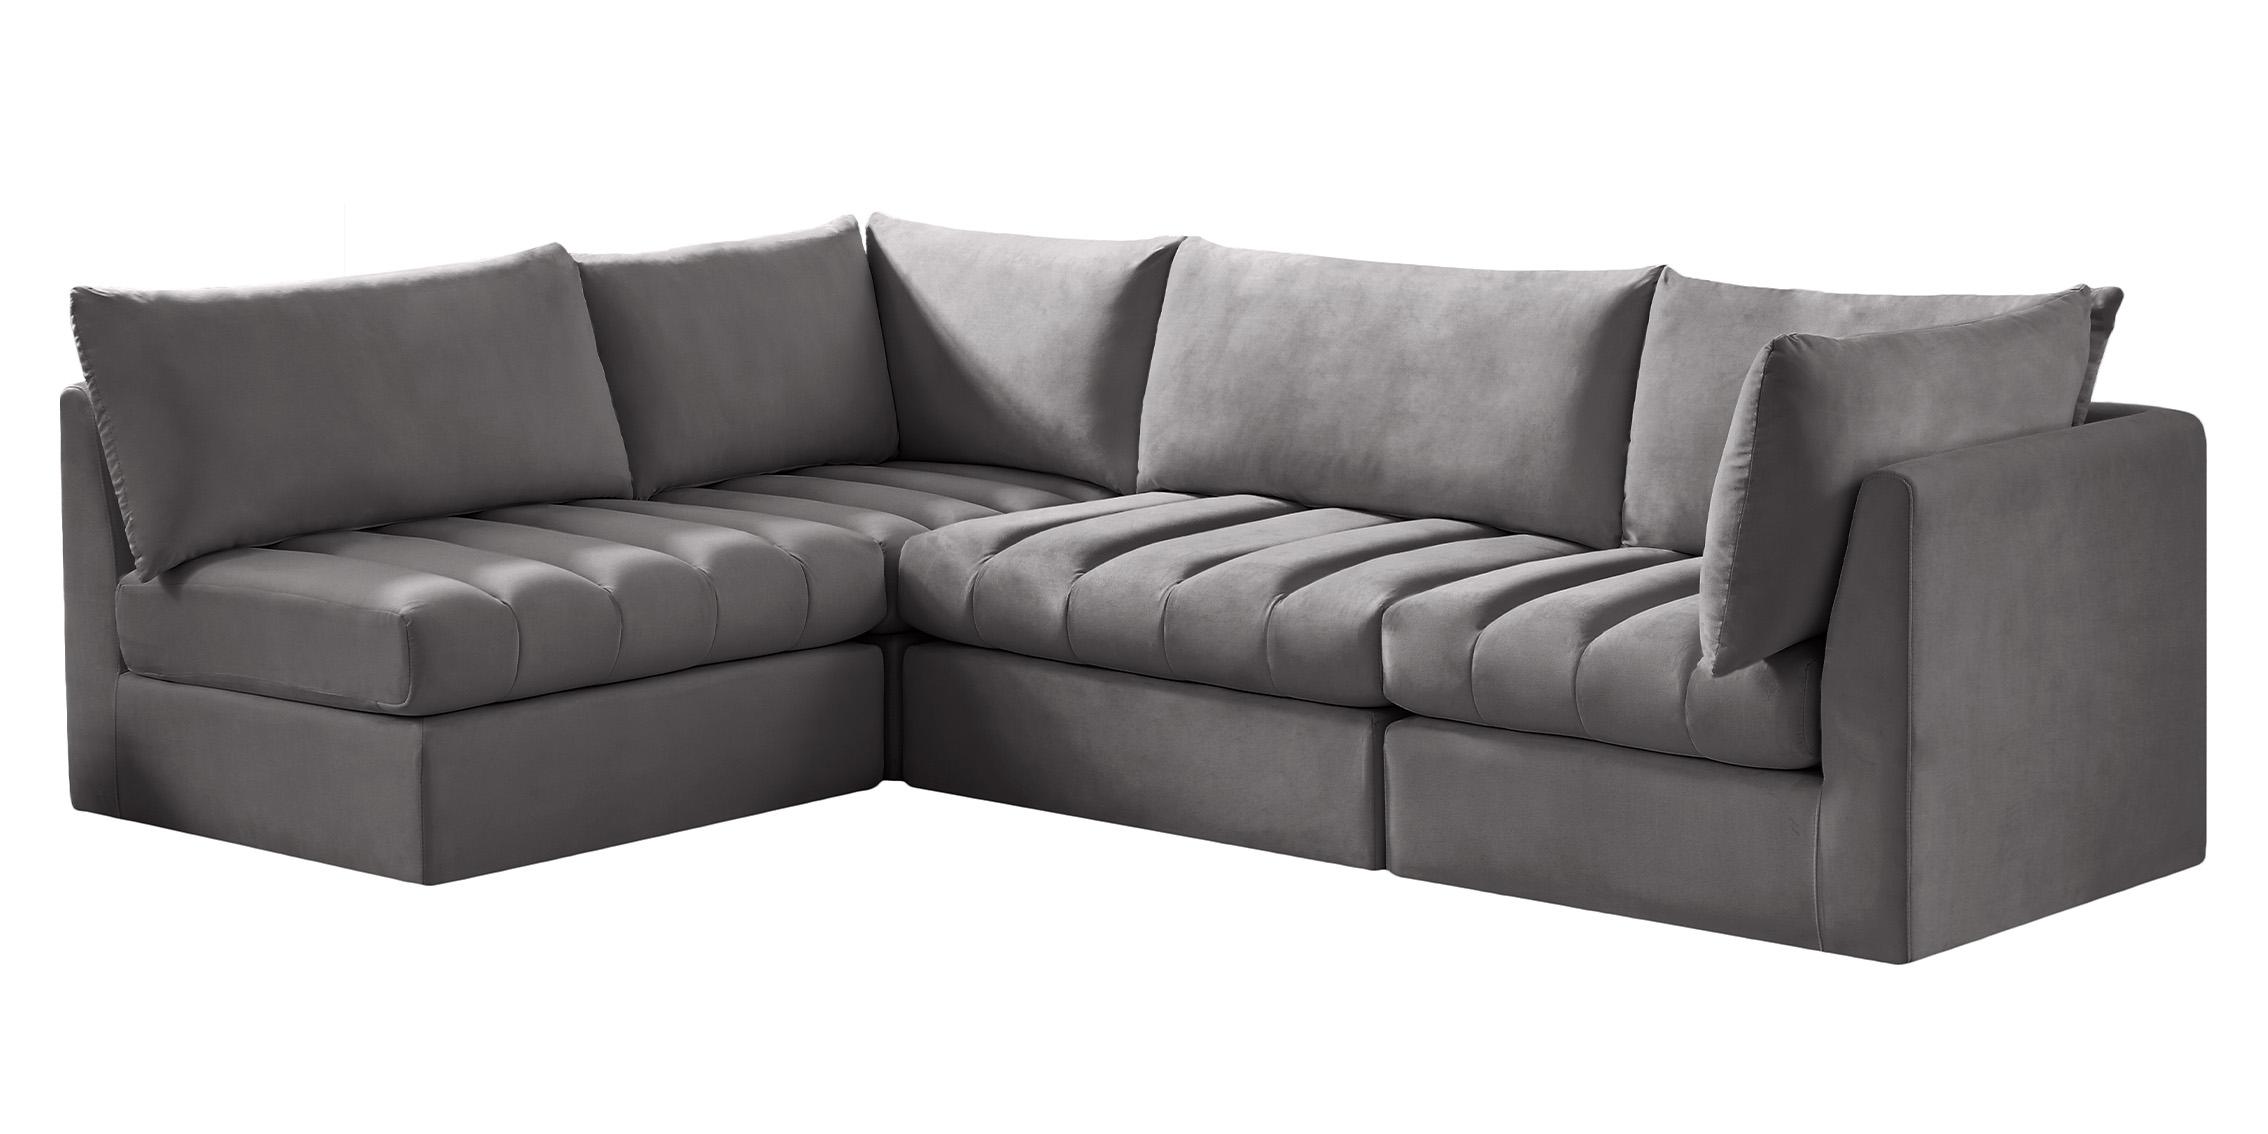 

    
649Grey-Sec4A Meridian Furniture Modular Sectional Sofa
